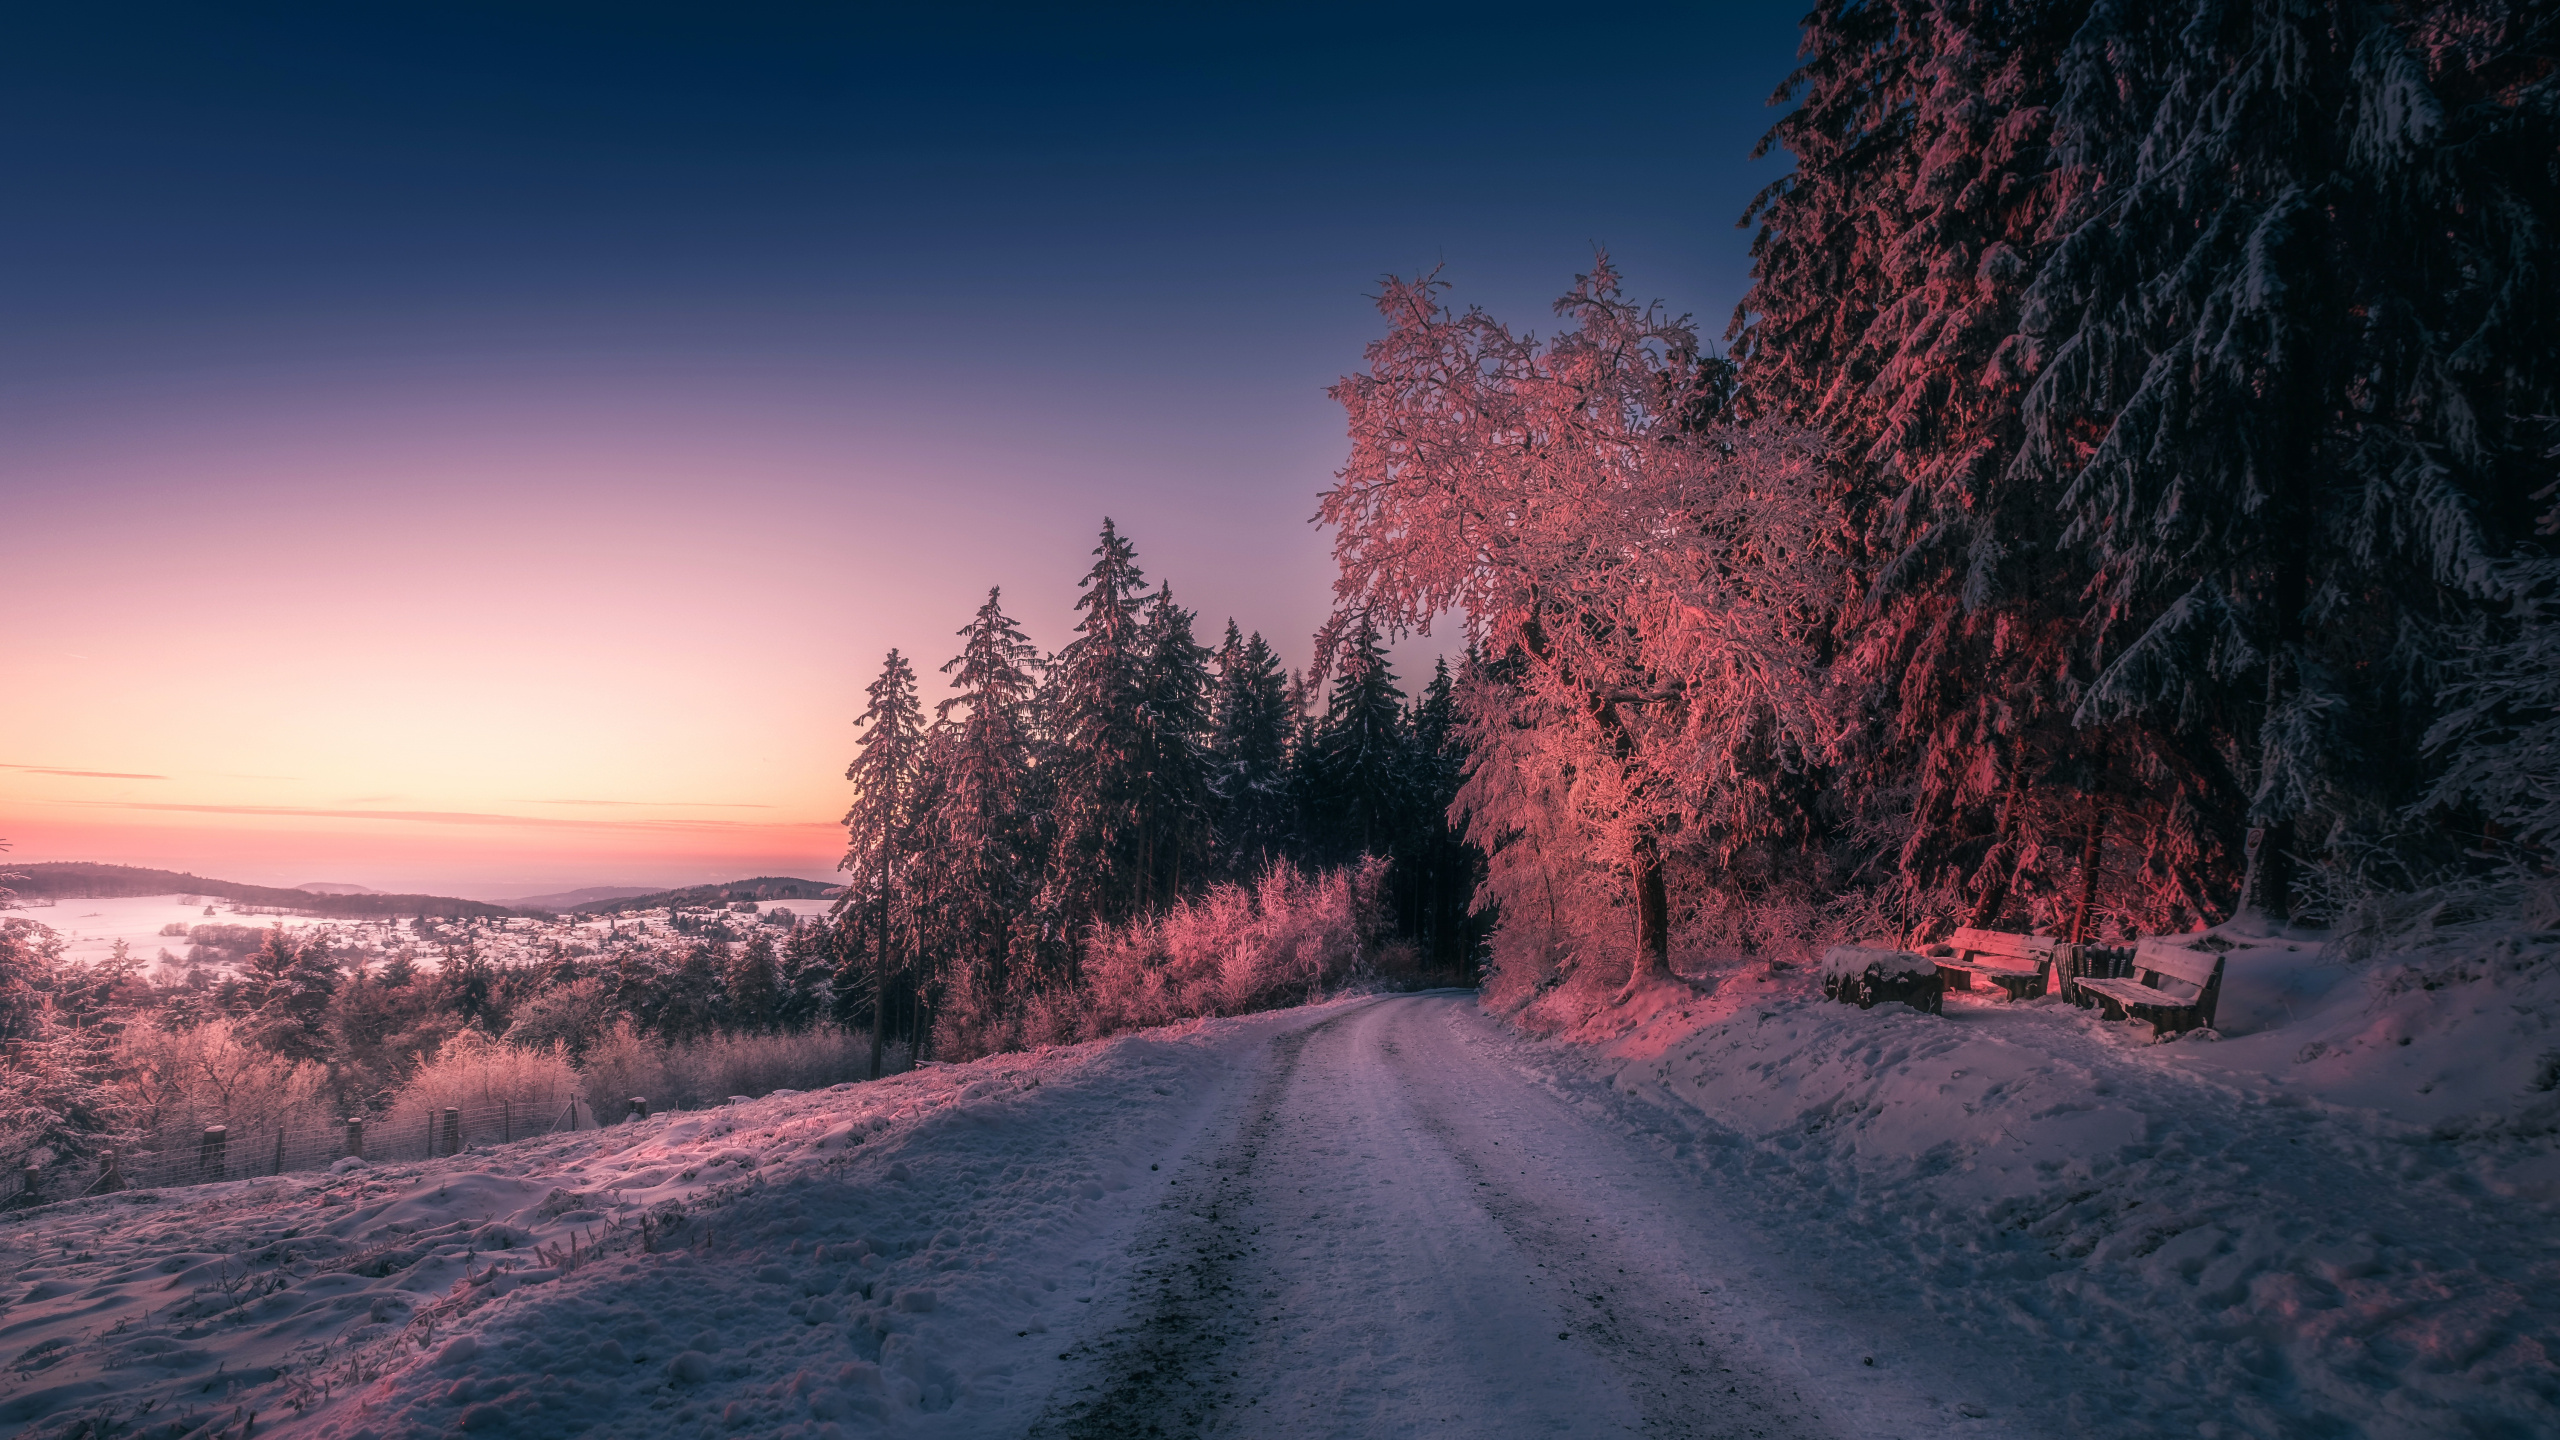 冬天, 冻结, 早上, 黎明, 富士X-Pro2 壁纸 2560x1440 允许